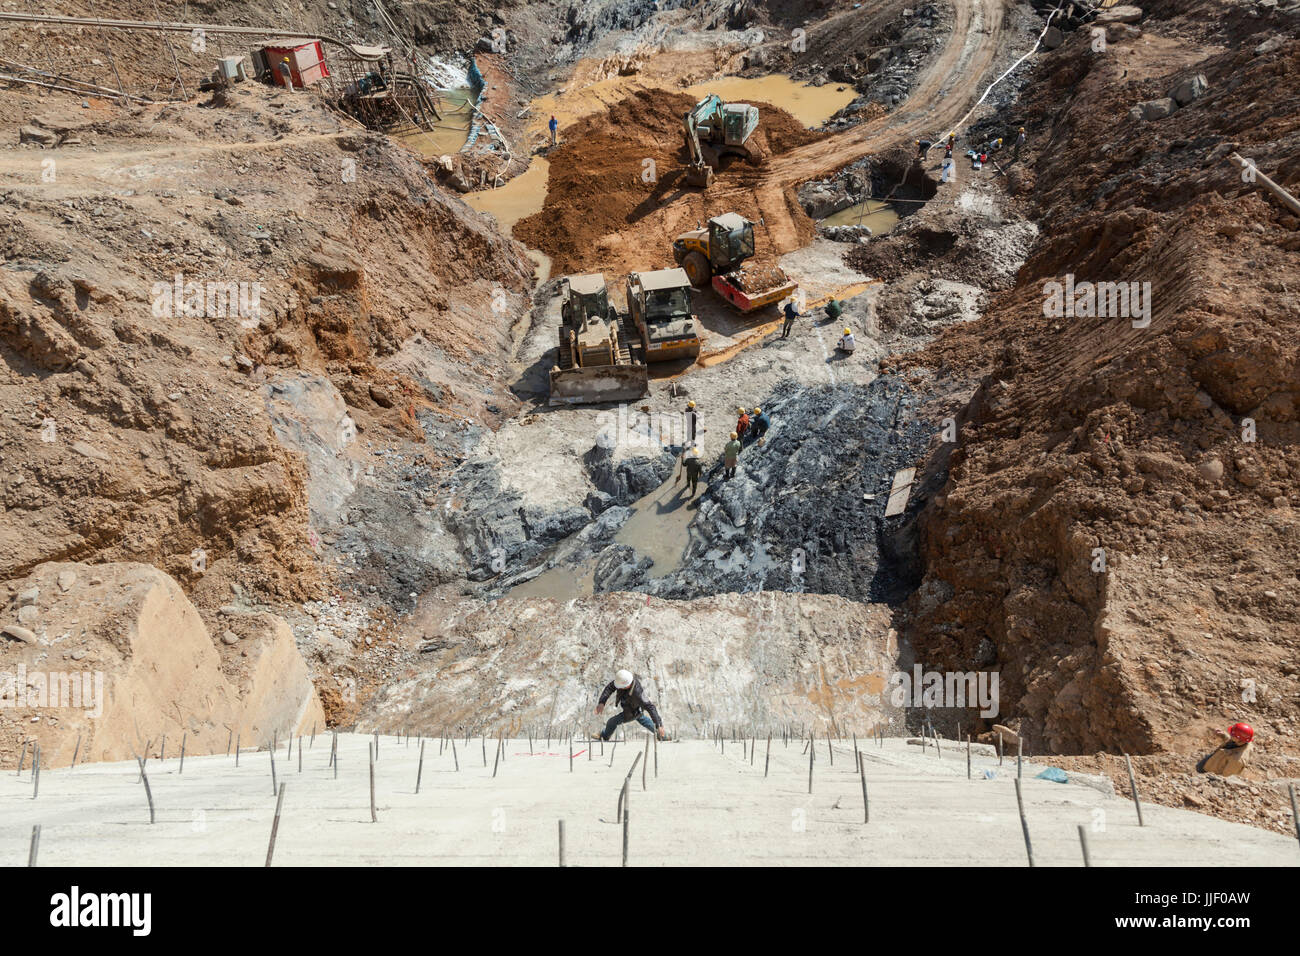 Un travailleur de la construction traverse un mur vertical en sautant sur armature en saillie au-dessus de travaux d'excavation sur le site de construction du barrage de # 5 sur la rivière Nam Ou au Laos. Banque D'Images